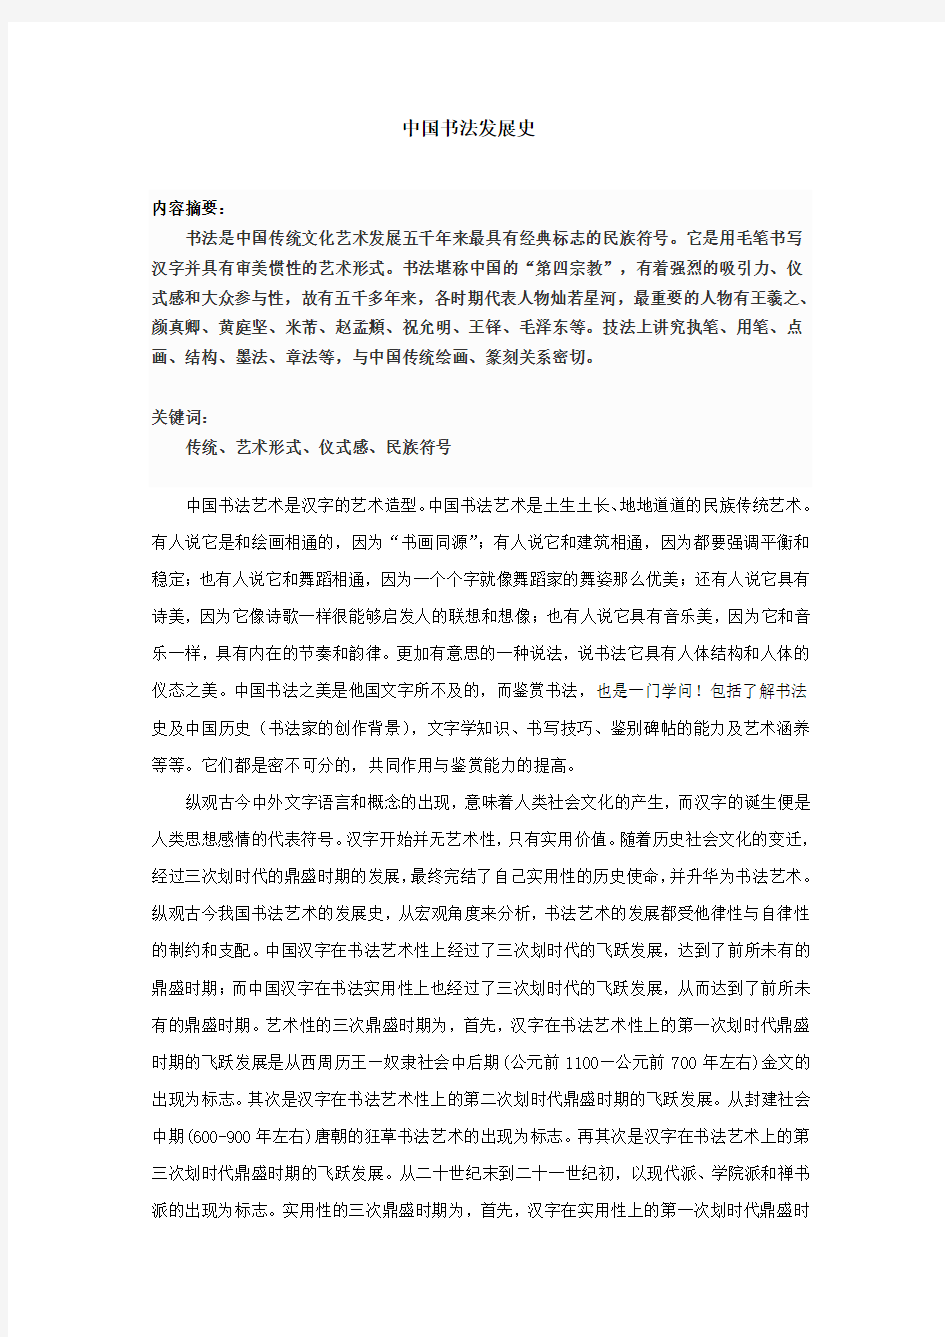 中国书法发展史